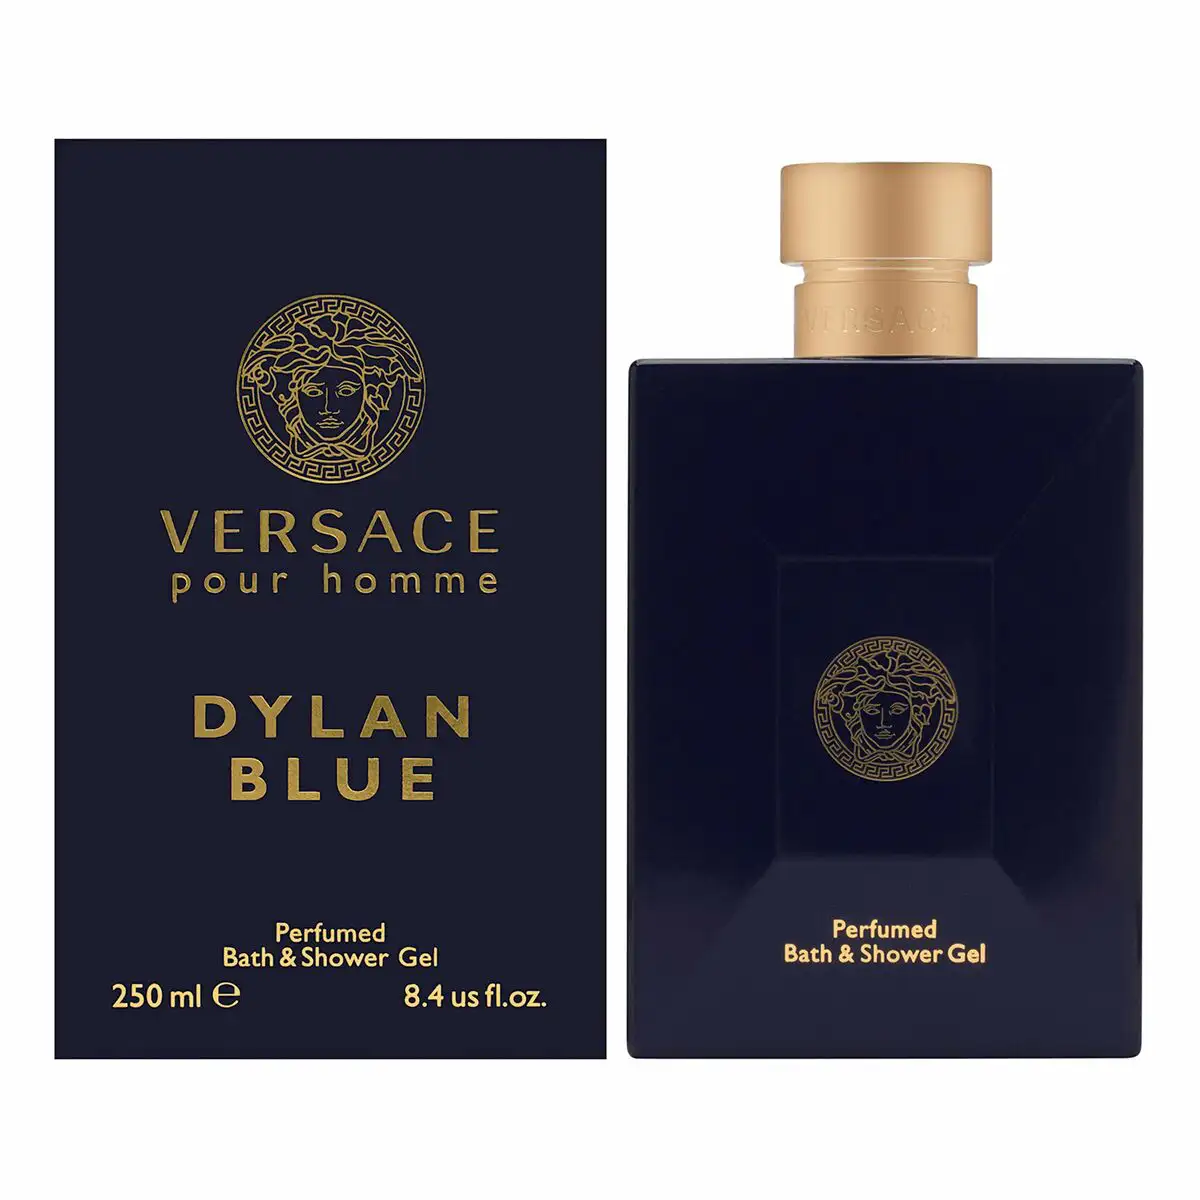 Gel douche parfume versace dylan blue 250 ml_4145. Bienvenue sur DIAYTAR SENEGAL - Où l'Authenticité Rencontre le Confort. Plongez dans notre univers de produits qui allient tradition et commodité pour répondre à vos besoins.